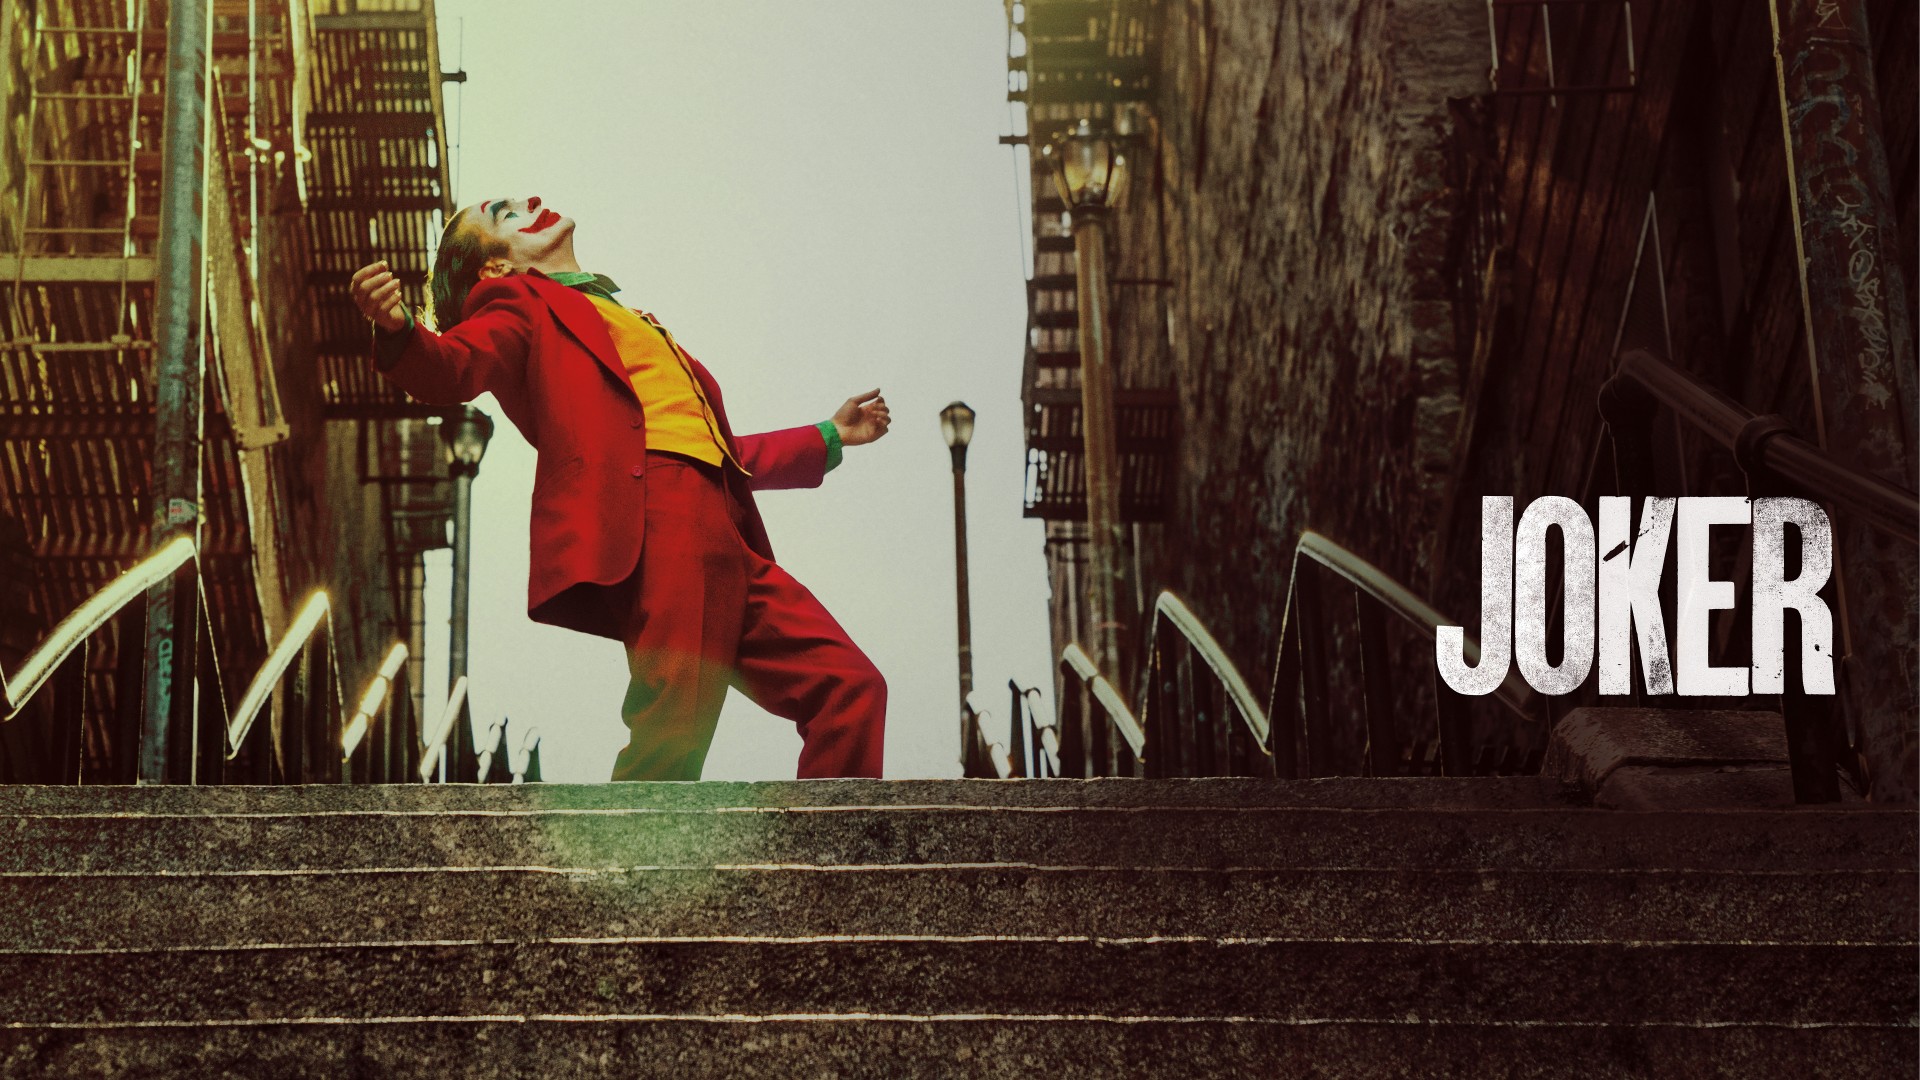 People 1920x1080 Joker (2019 Movie) Joker Joaquin Phoenix movies dancing DC Comics stairs actor men